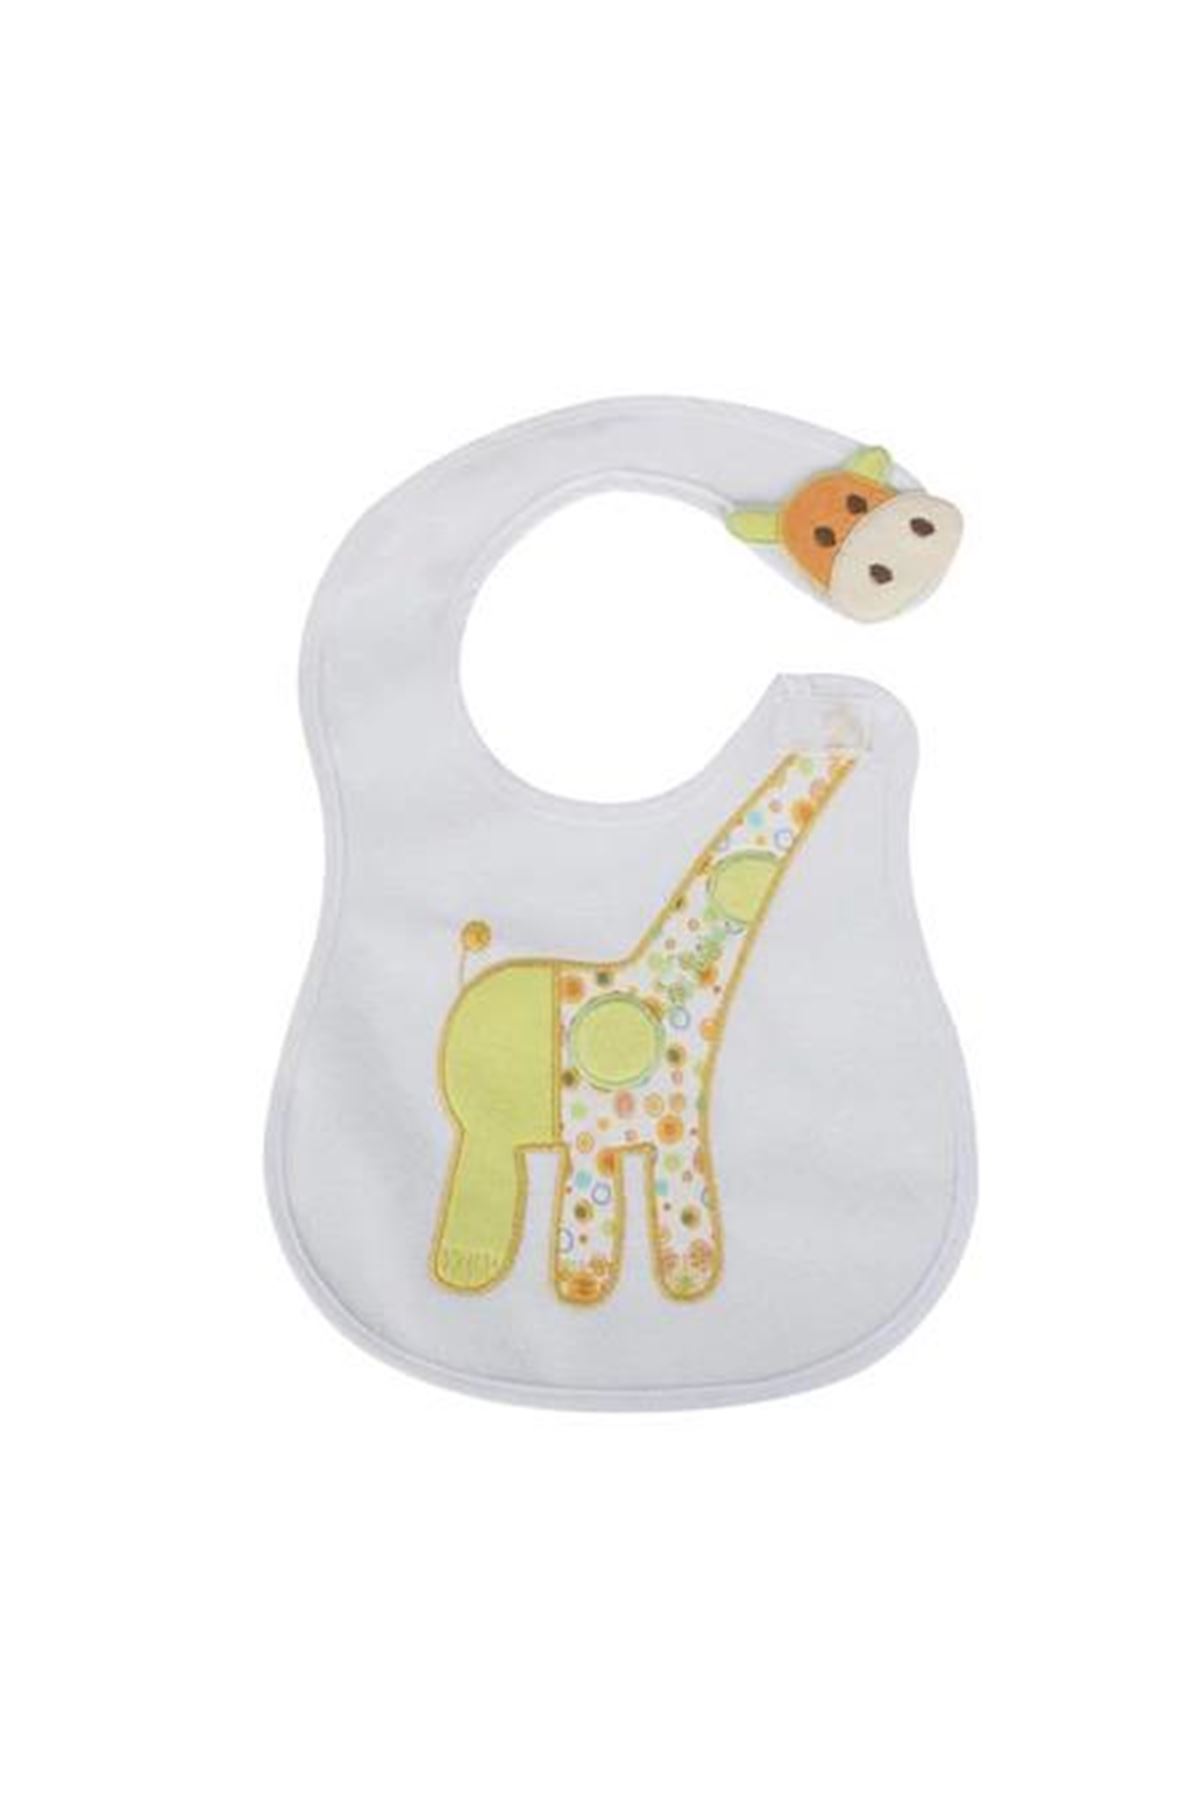 Sevi Bebe Yandan Cırtlı Mama Önlüğü ART-71 Zürafa